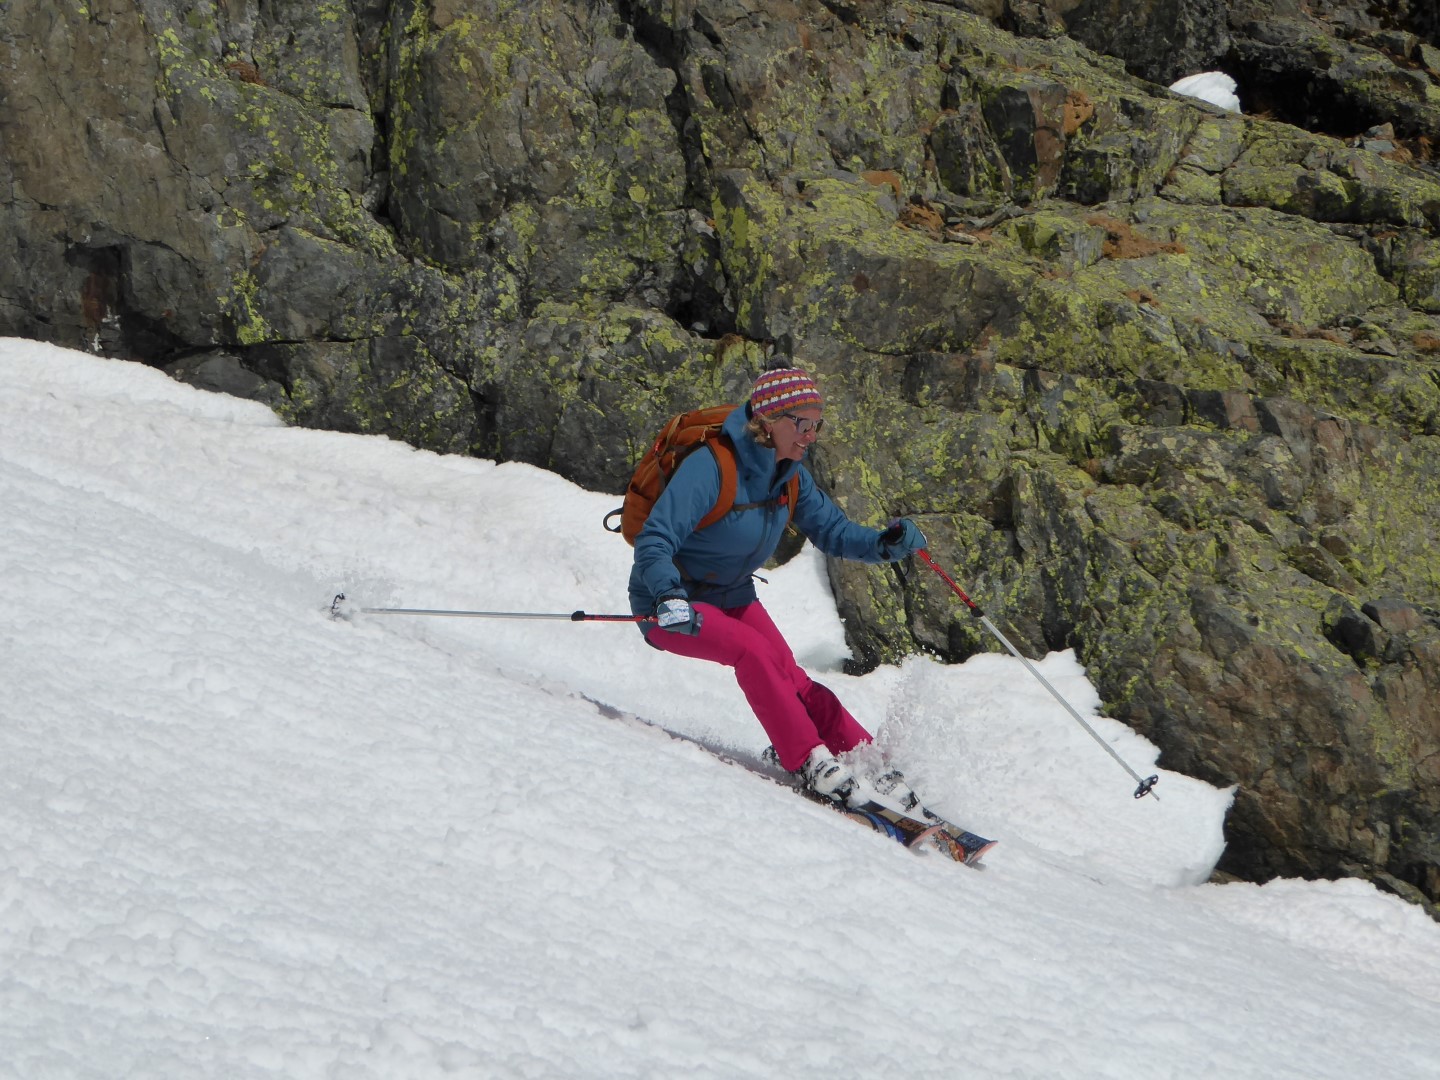 Testing Dakine's women's Silcox ski jacket